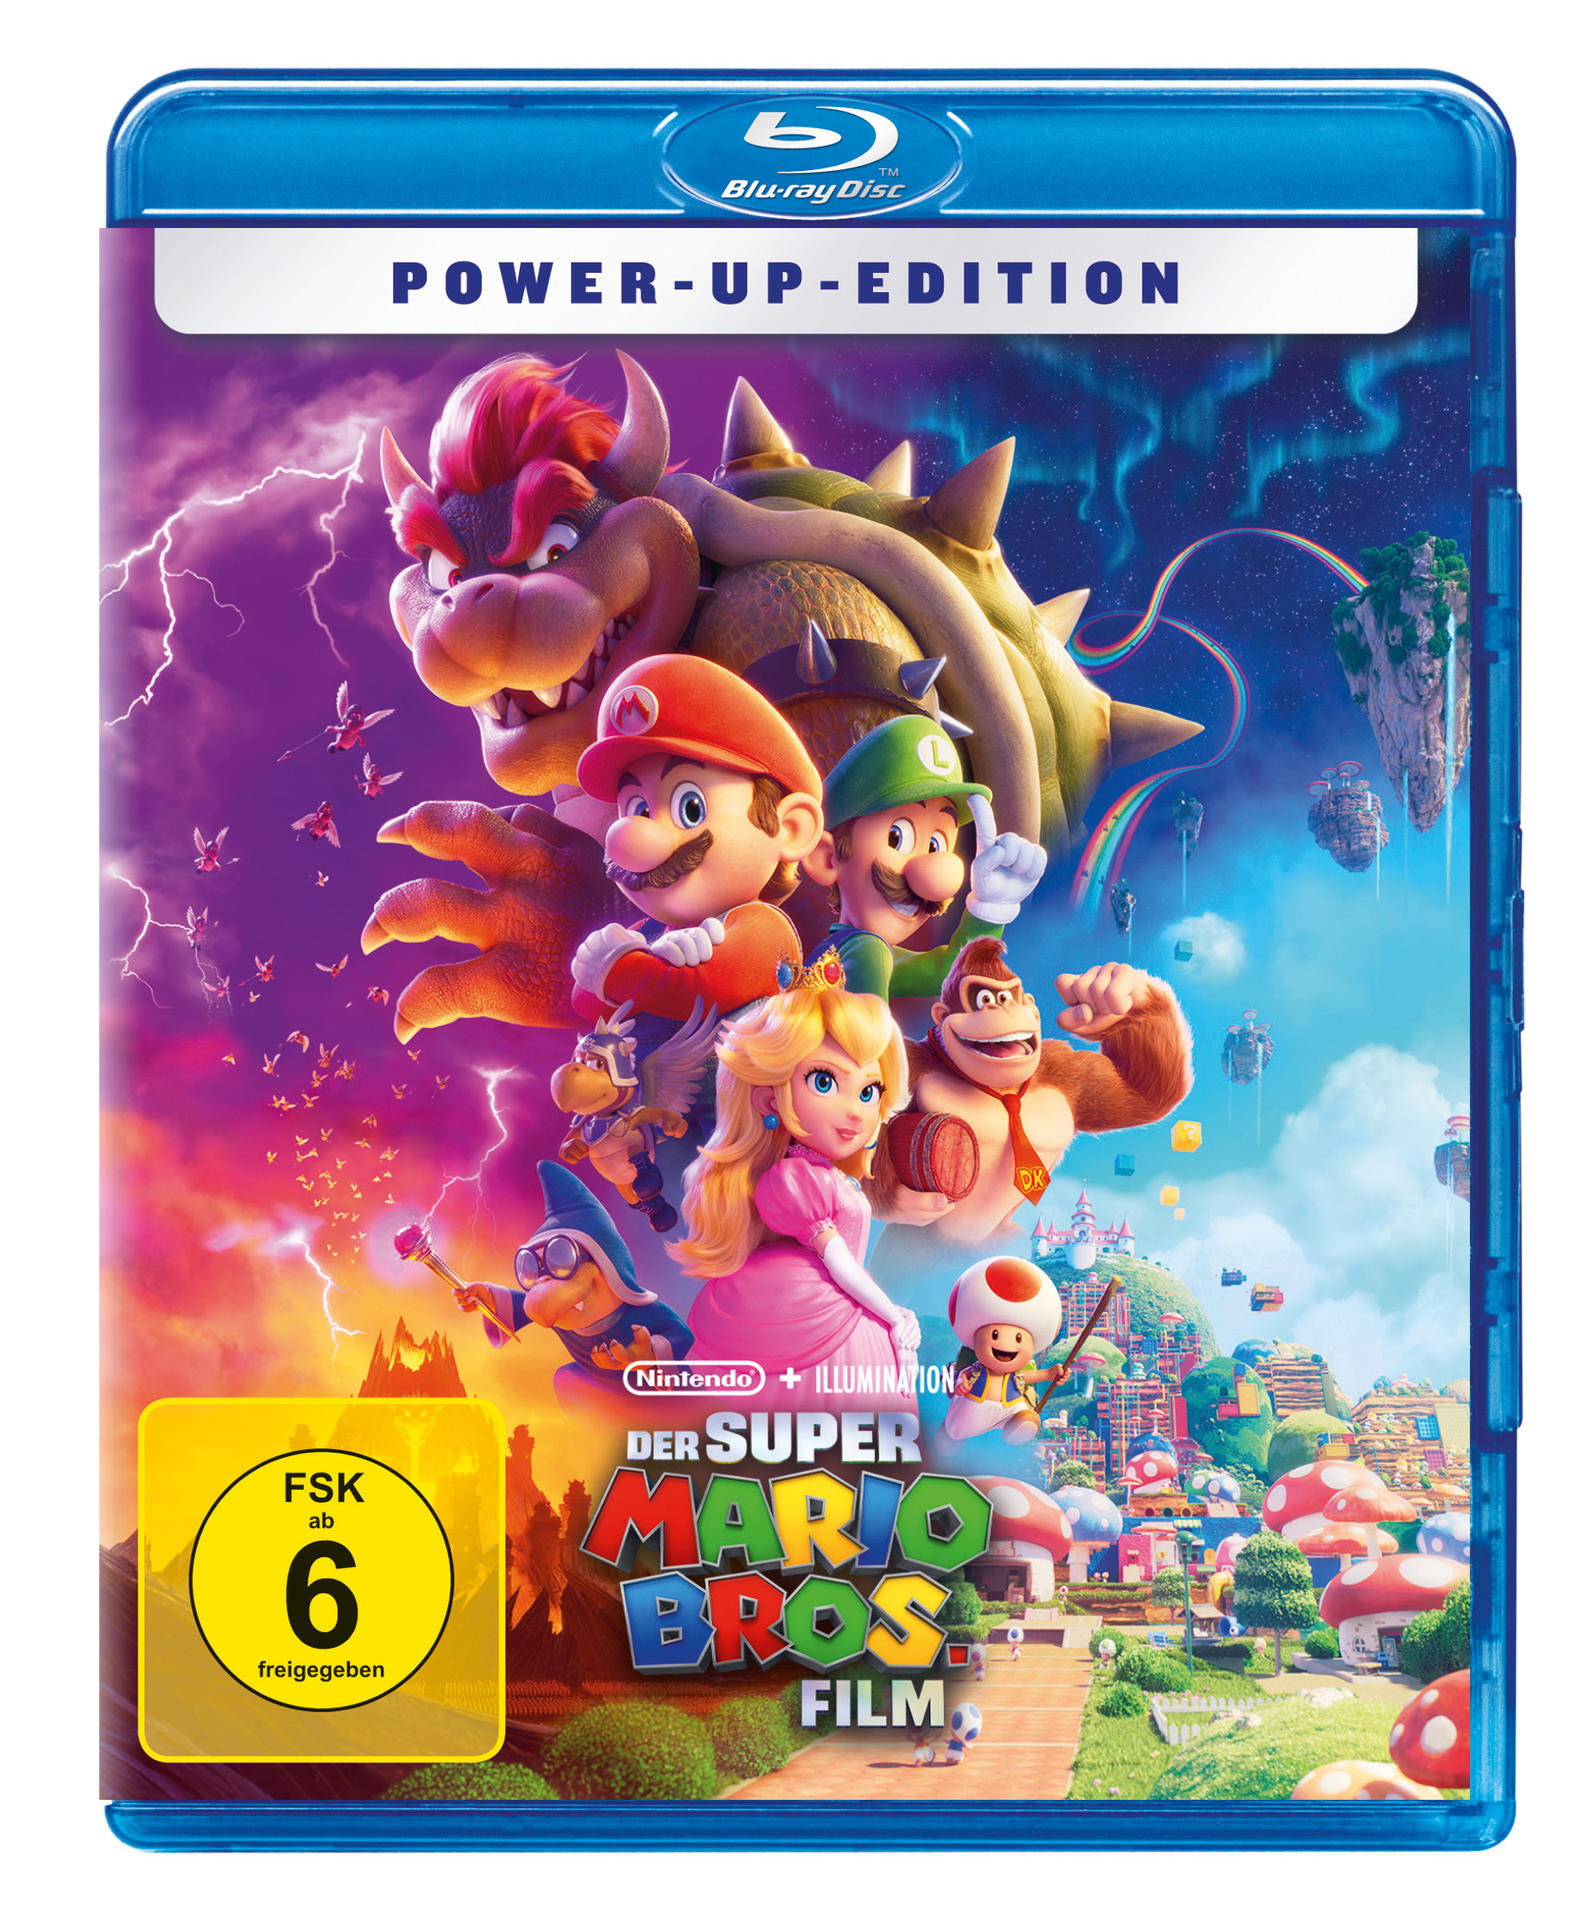 Der Super Mario Blu-ray Bros. Film